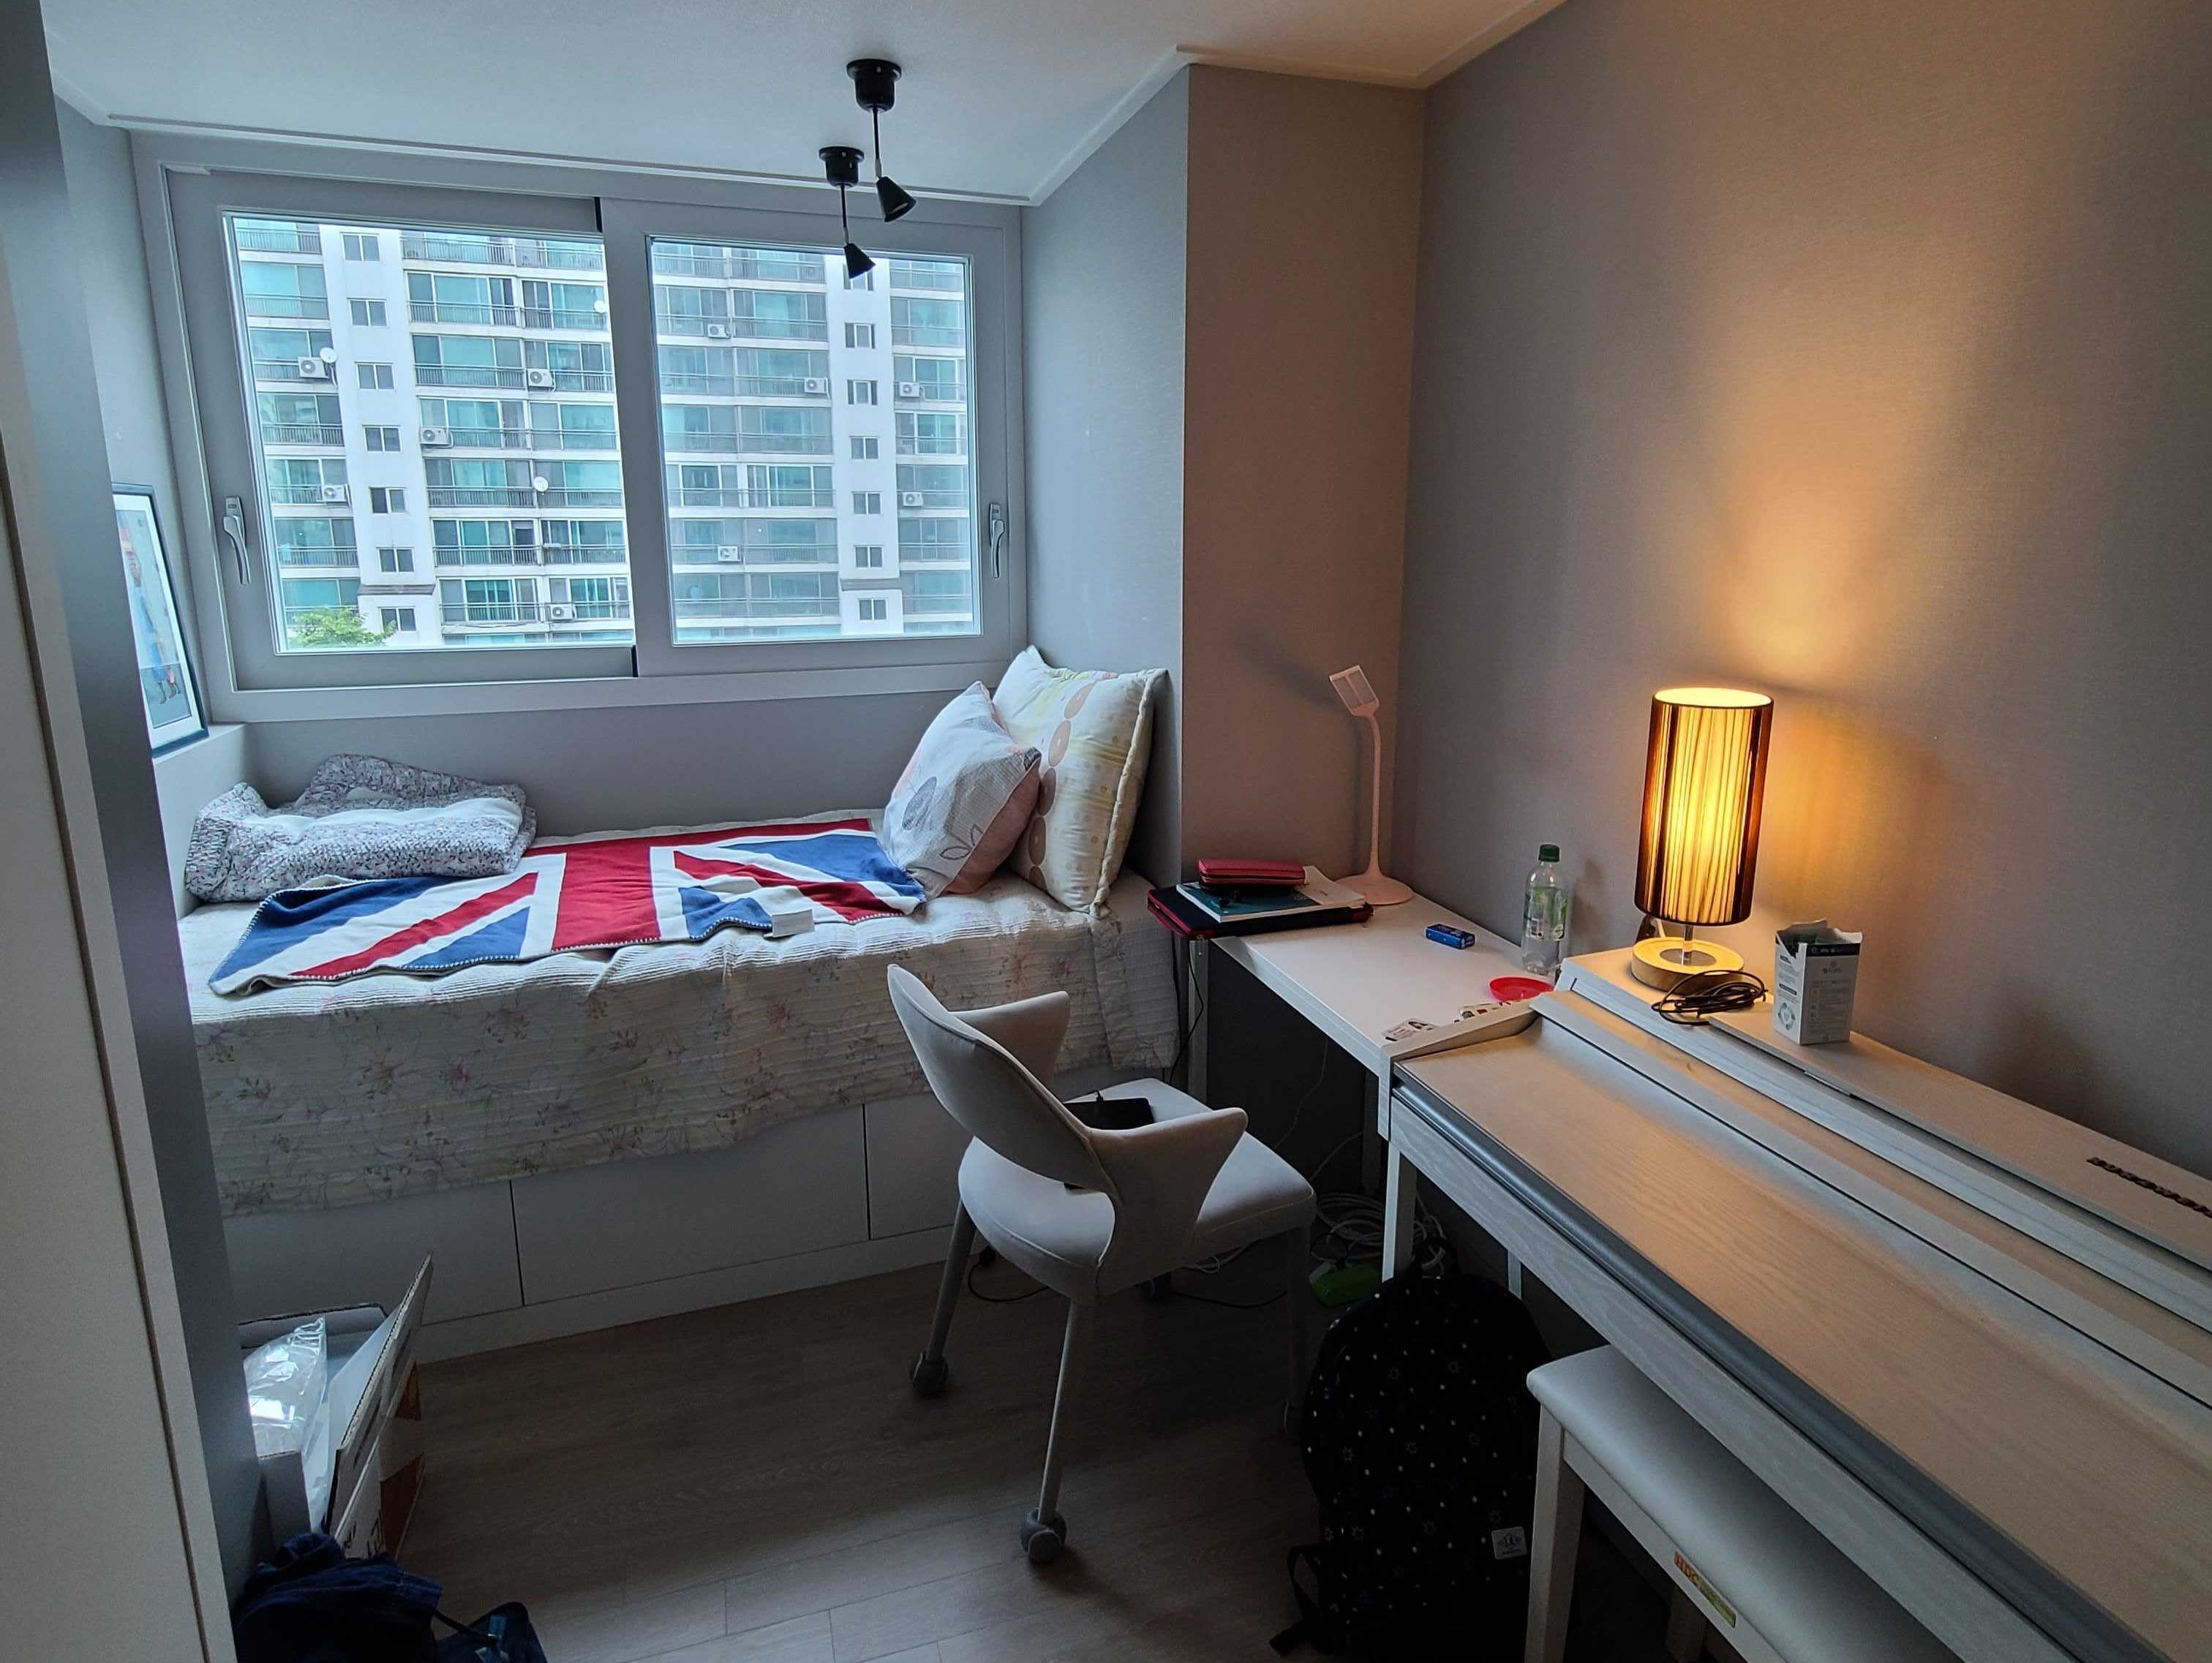 Ein gemütliches Schlafzimmer mit klarem, minimalistischem Design